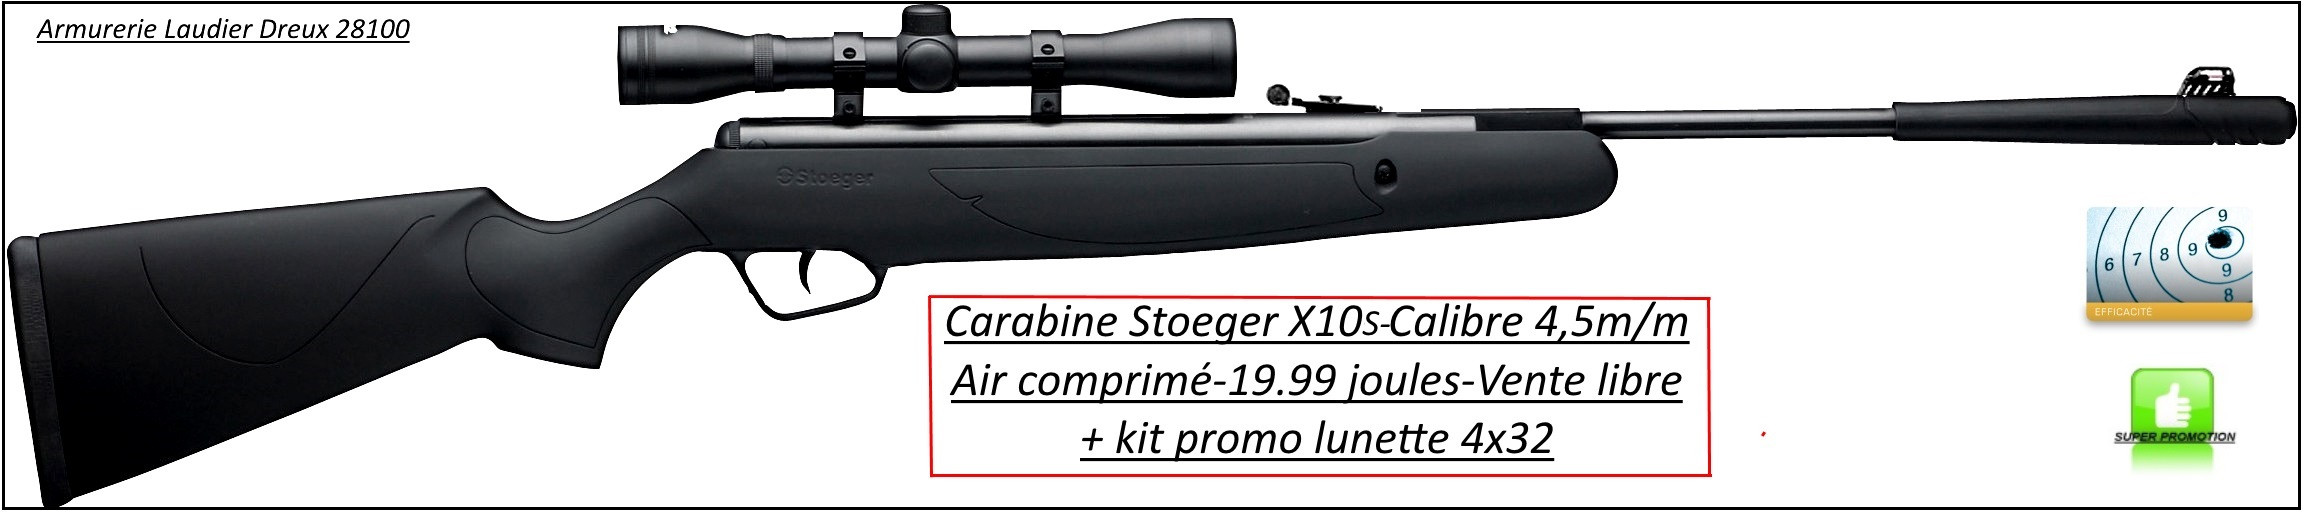 Carabine-air comprimé-Stoeger-X10S-Calibre 4.5m/m-Crosse synthétique-19.99 joules-+kit lunette 4x32-Promotion-Ref 24597